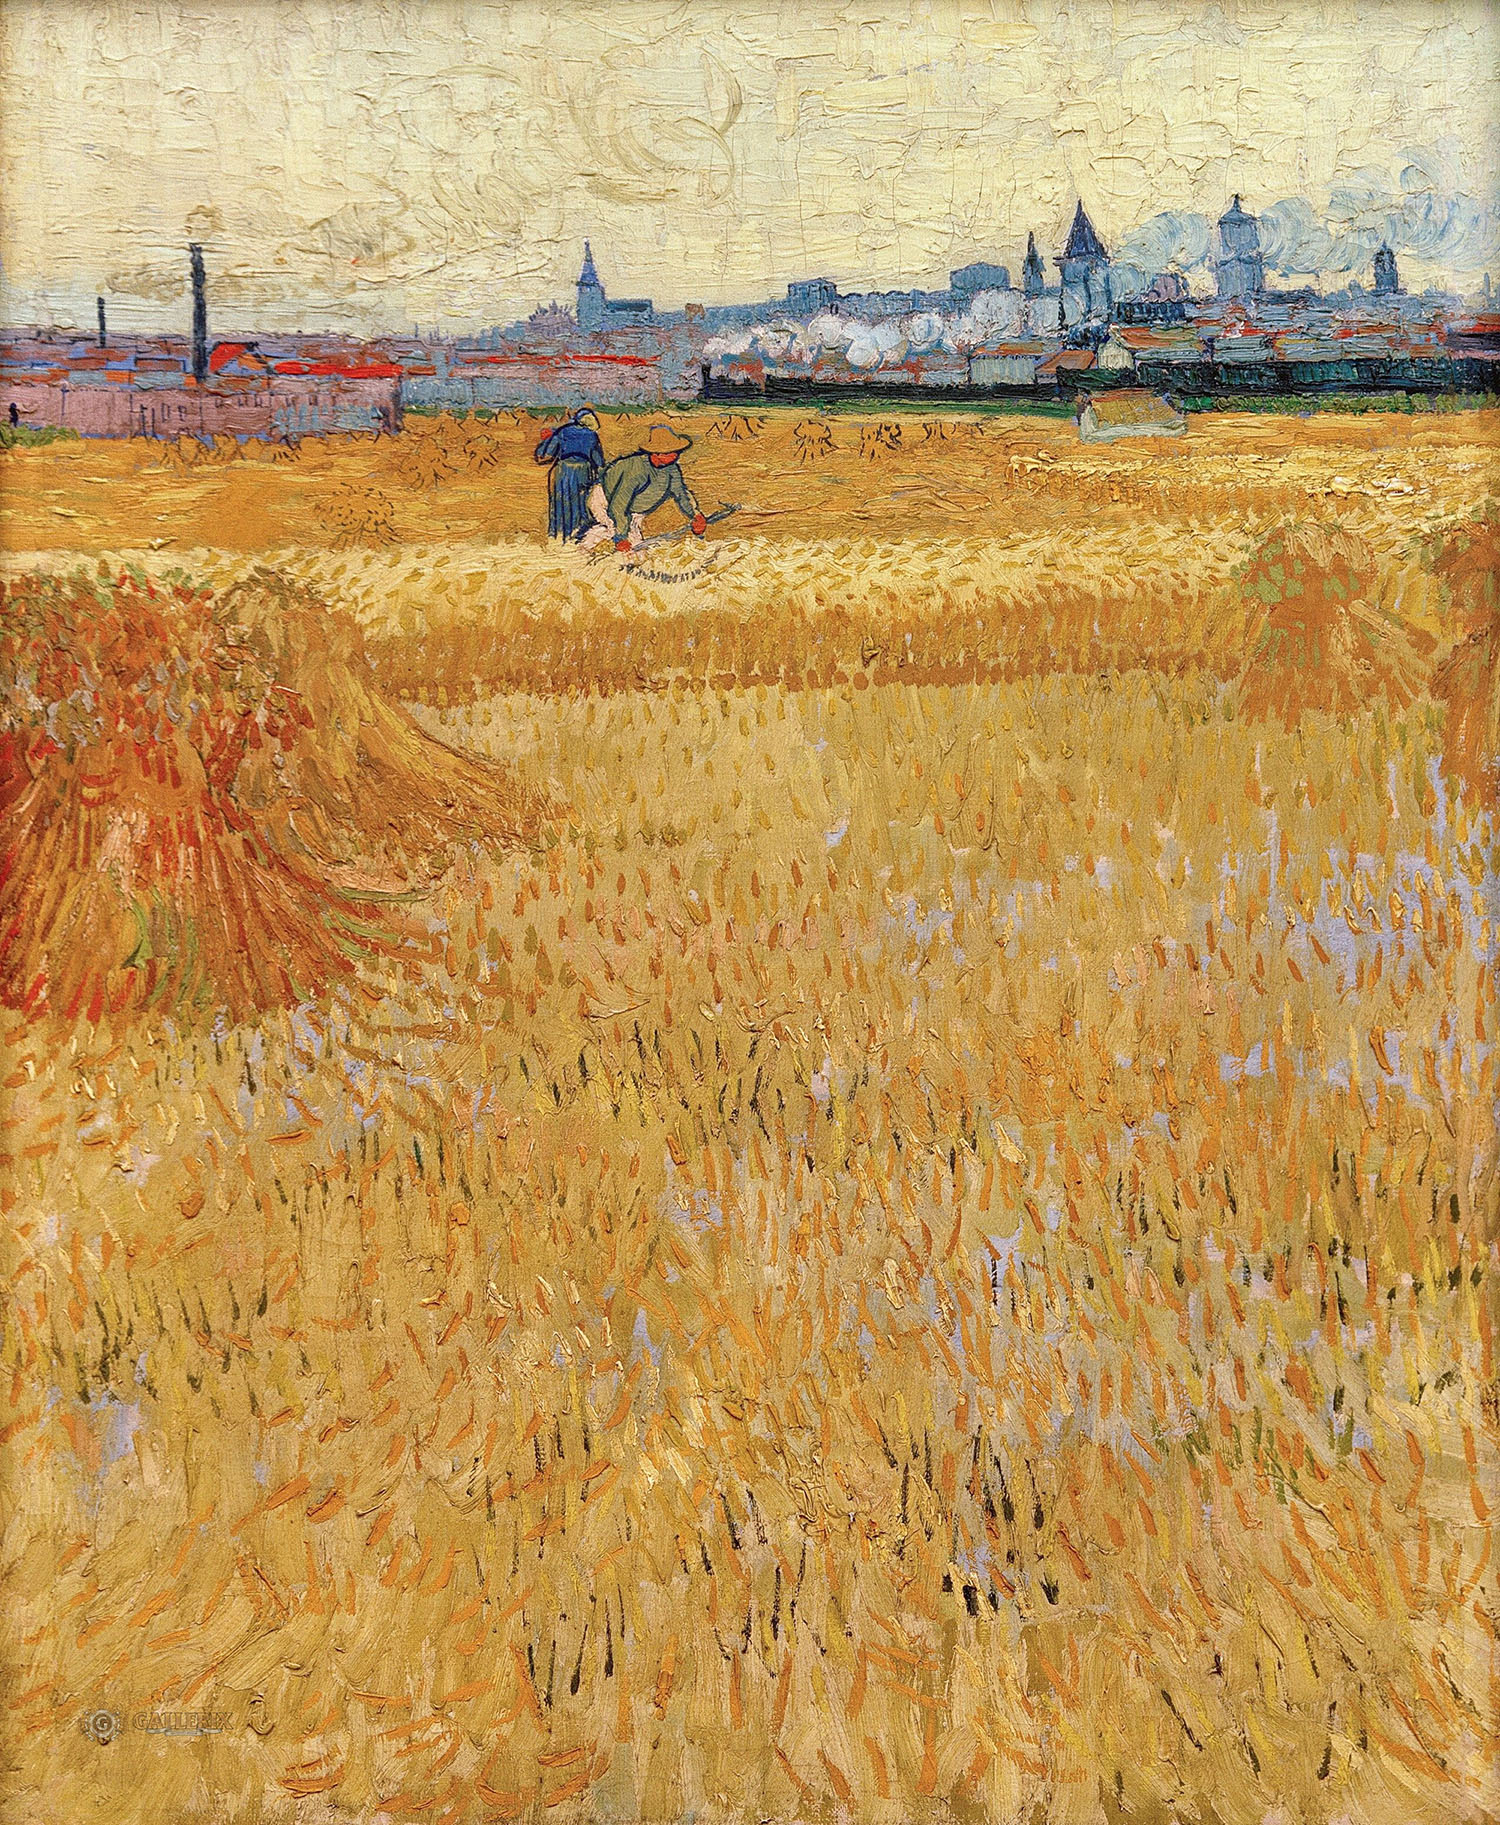 Винсент Ван Гог. "Вид Арля с пшеничного поля". 1888.